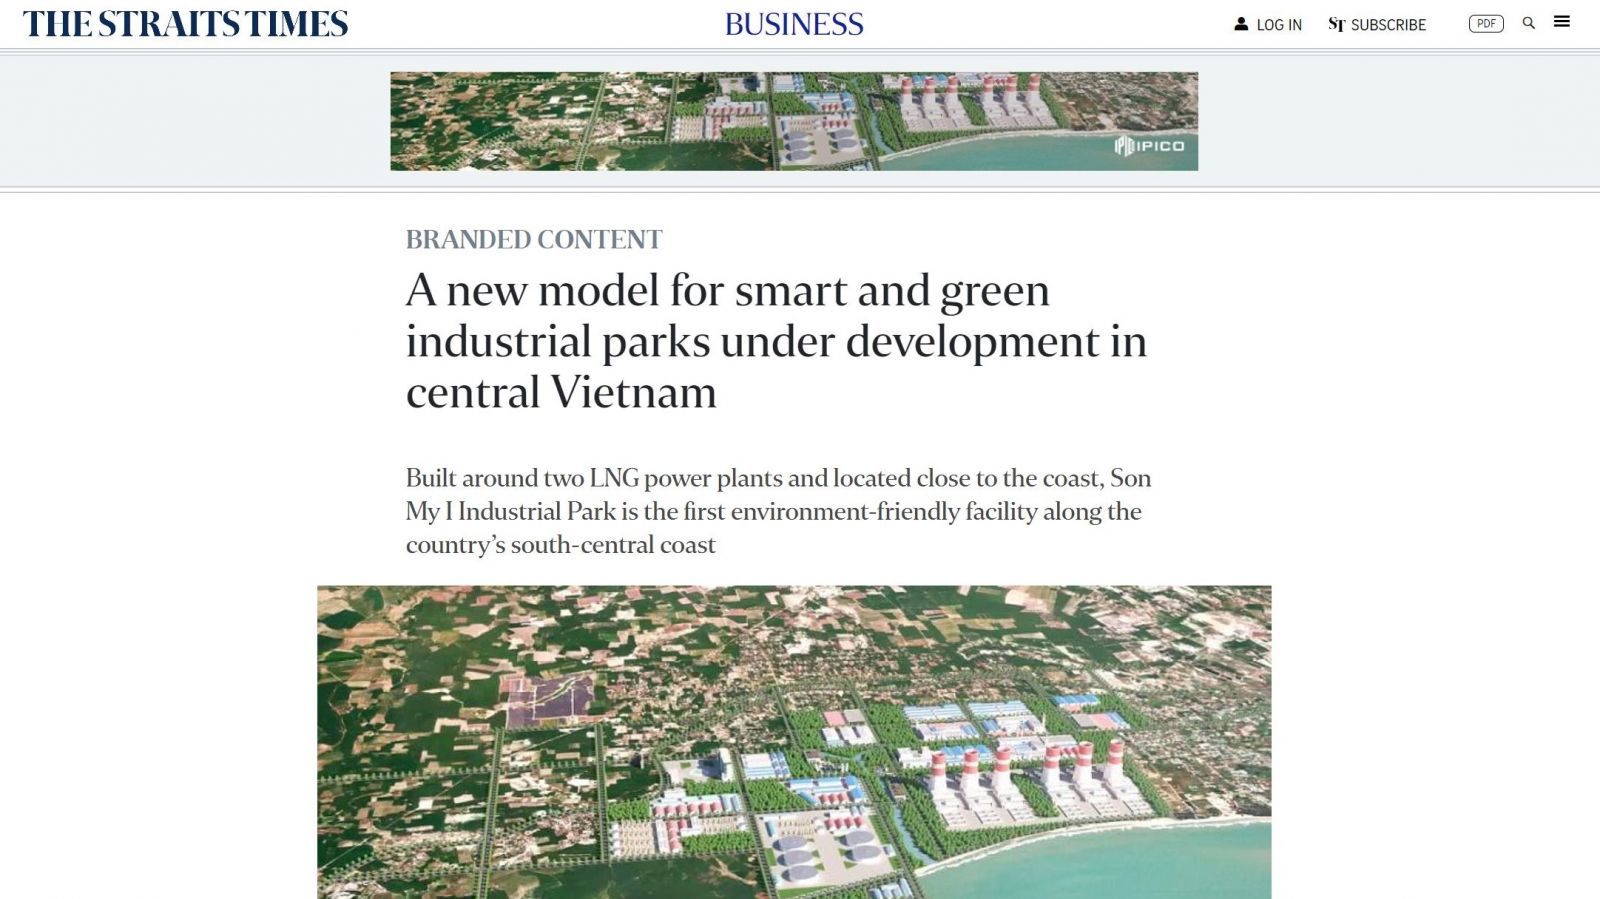 Bài viết về dự án các khu công nghiệp xanh và thông minh ở miền Trung Việt Nam trên The Straits Times